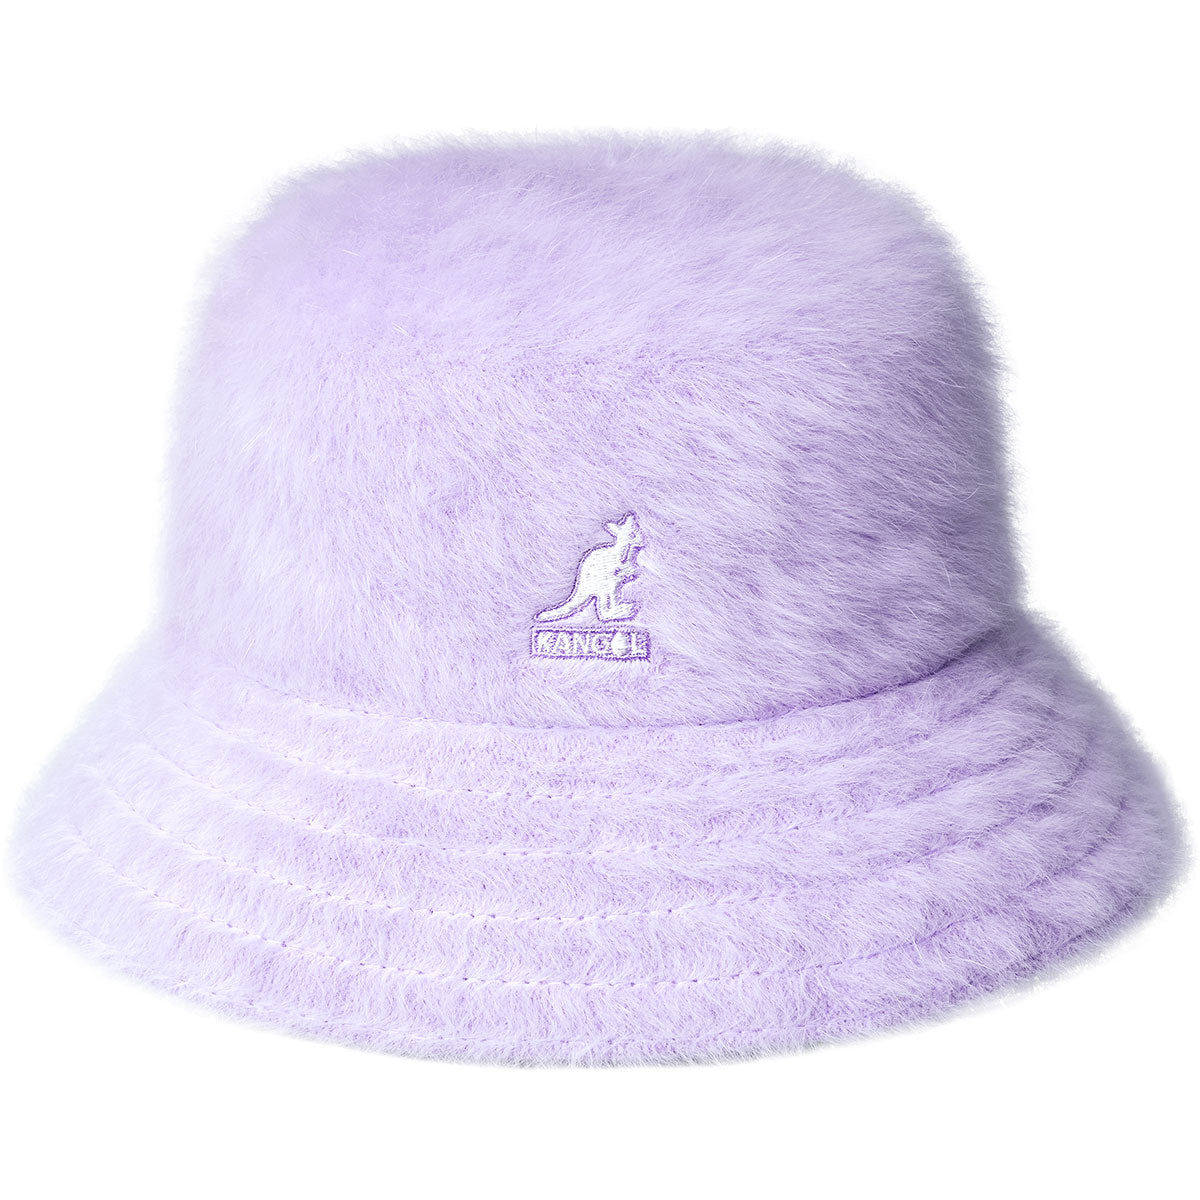 Kangol Furgora Bucket Hat - Digital Lavender